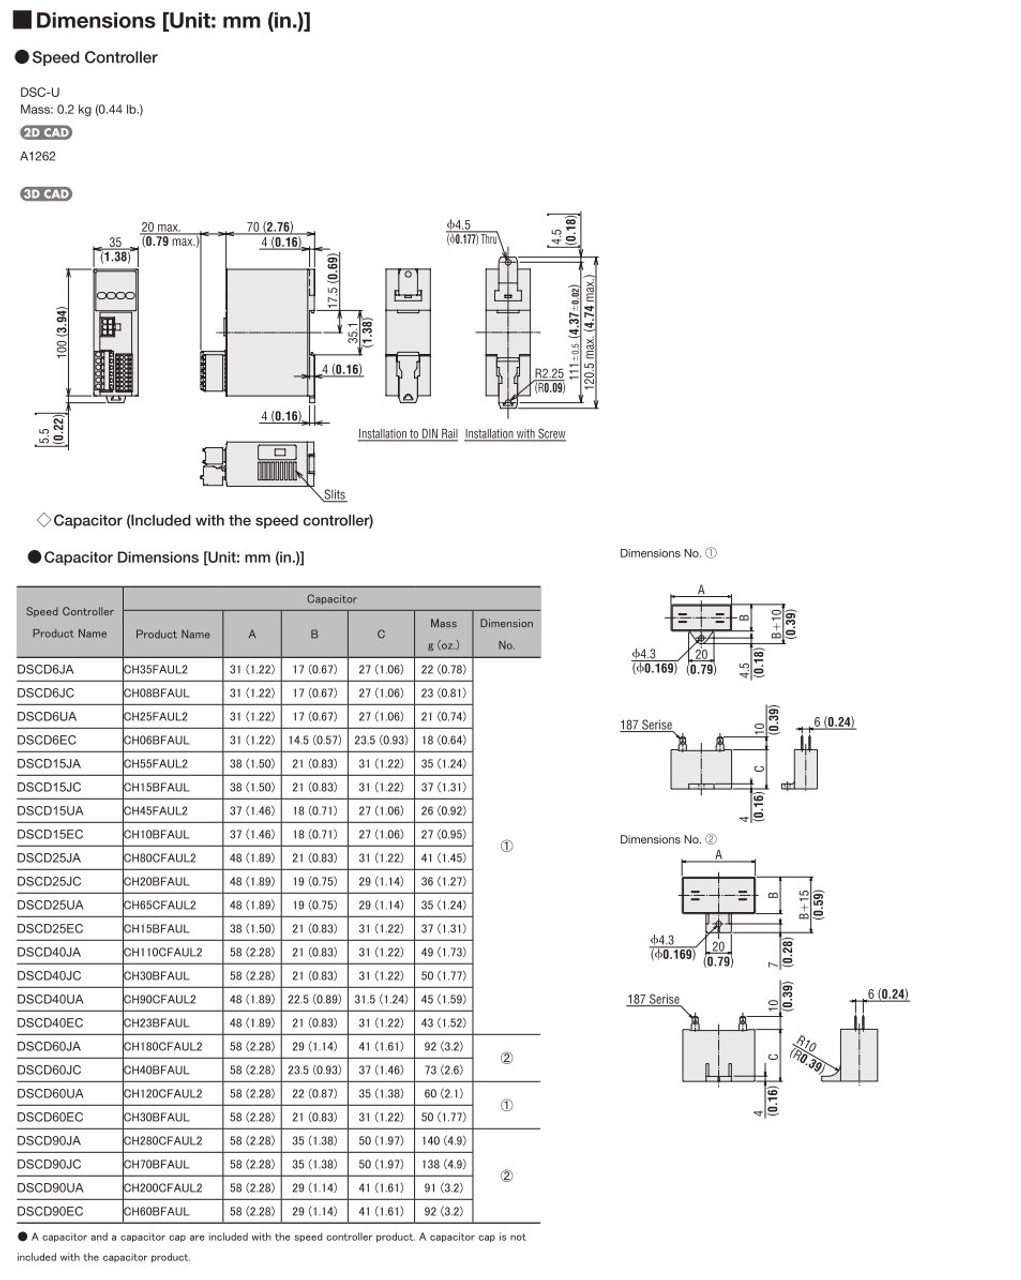 SCM315EC-90 / DSCD15EC - Dimensions